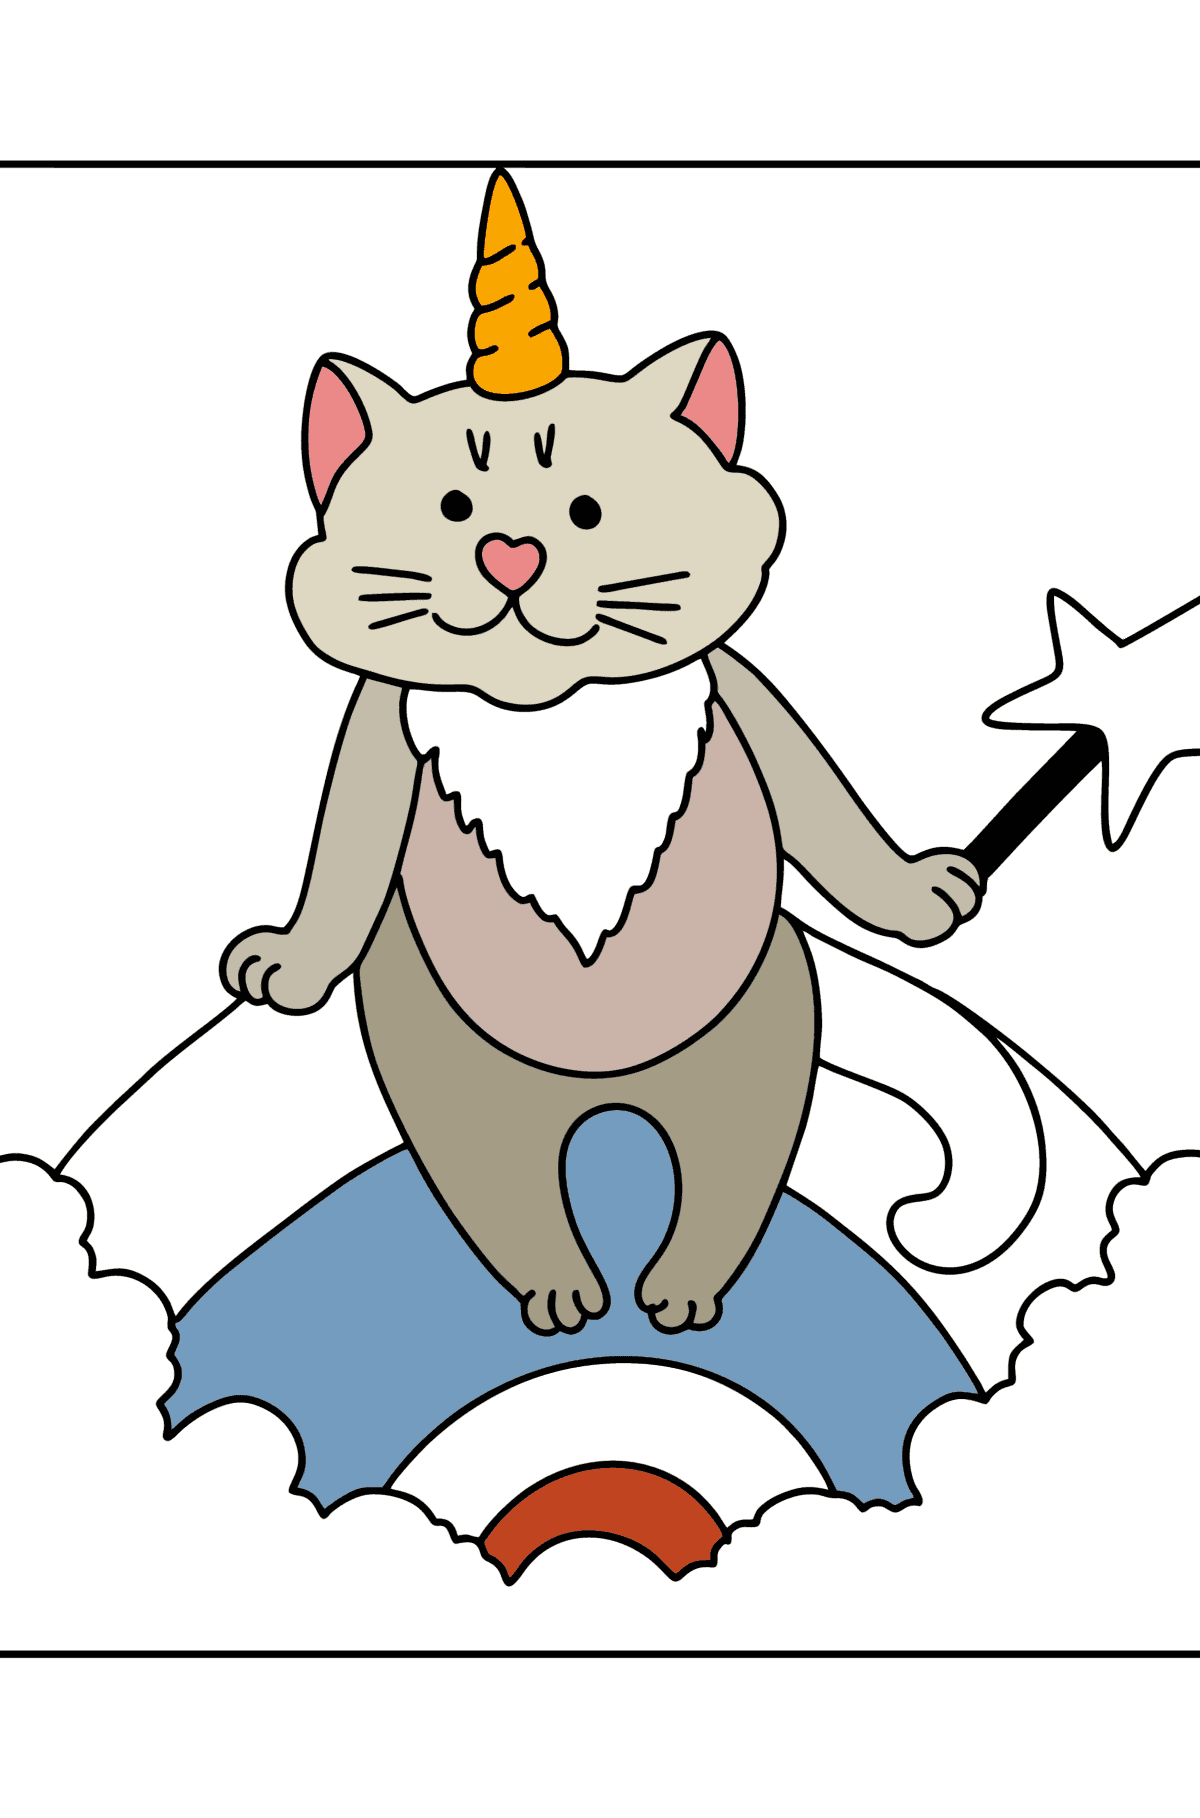 Disegno di Gattino unicorno da colorare - Disegni da colorare per bambini